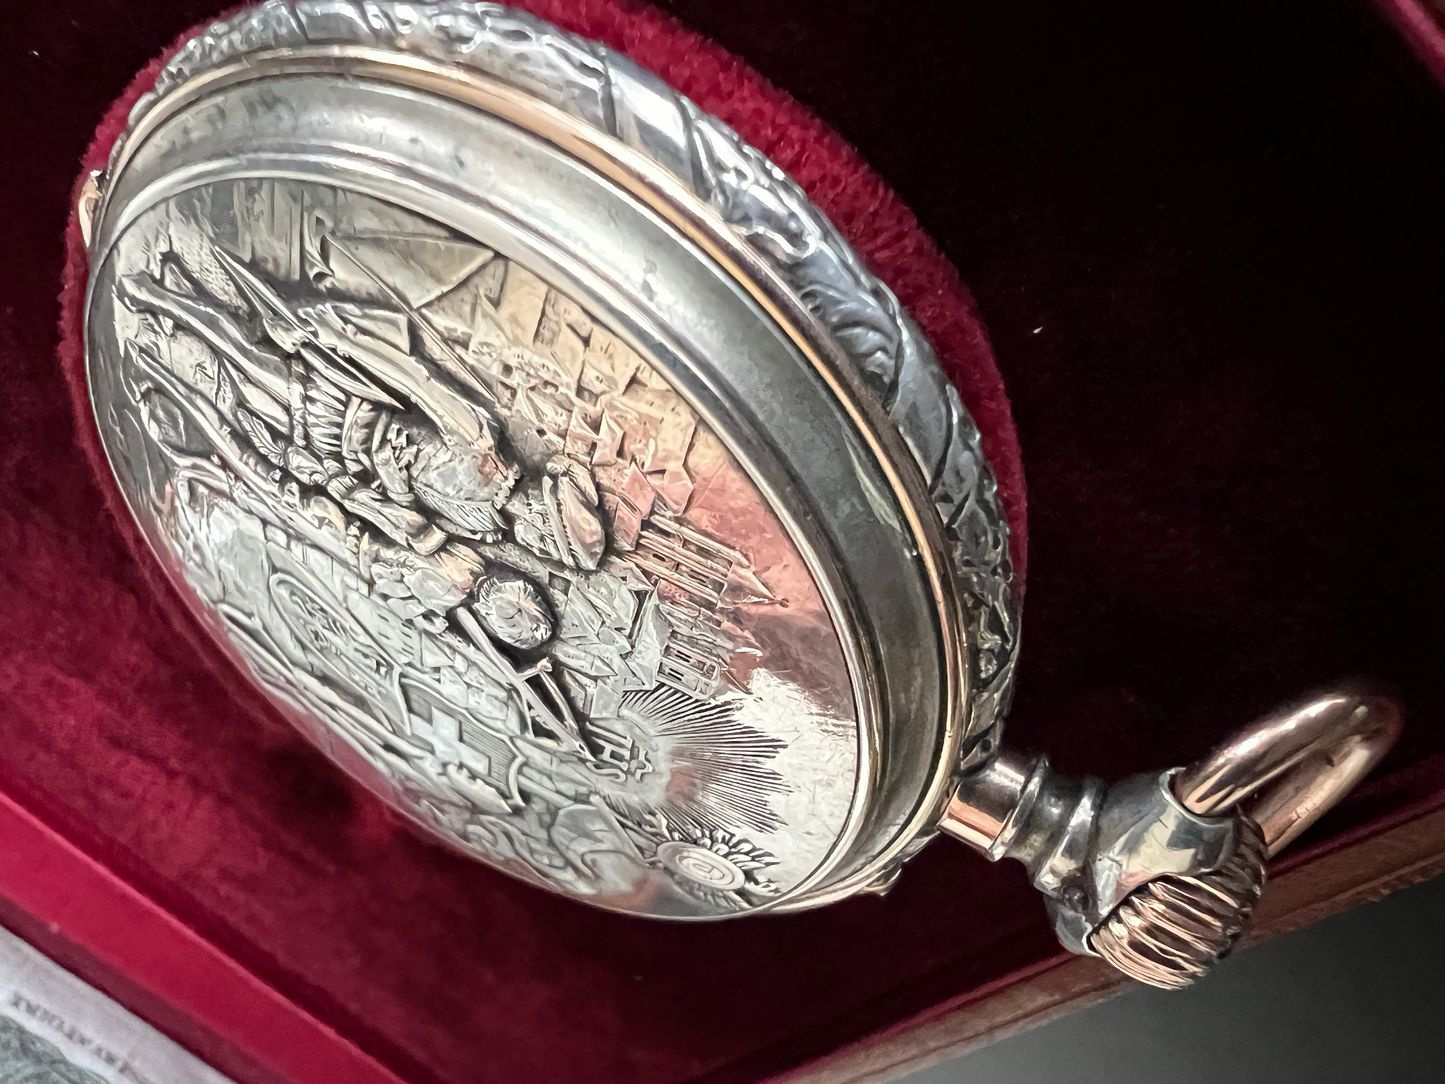 JJ Badollet & Co Genève 1887 Handcrafted Historical Vintage Rose Gold & Silver Pocket Watch /Taschenuhr Rare